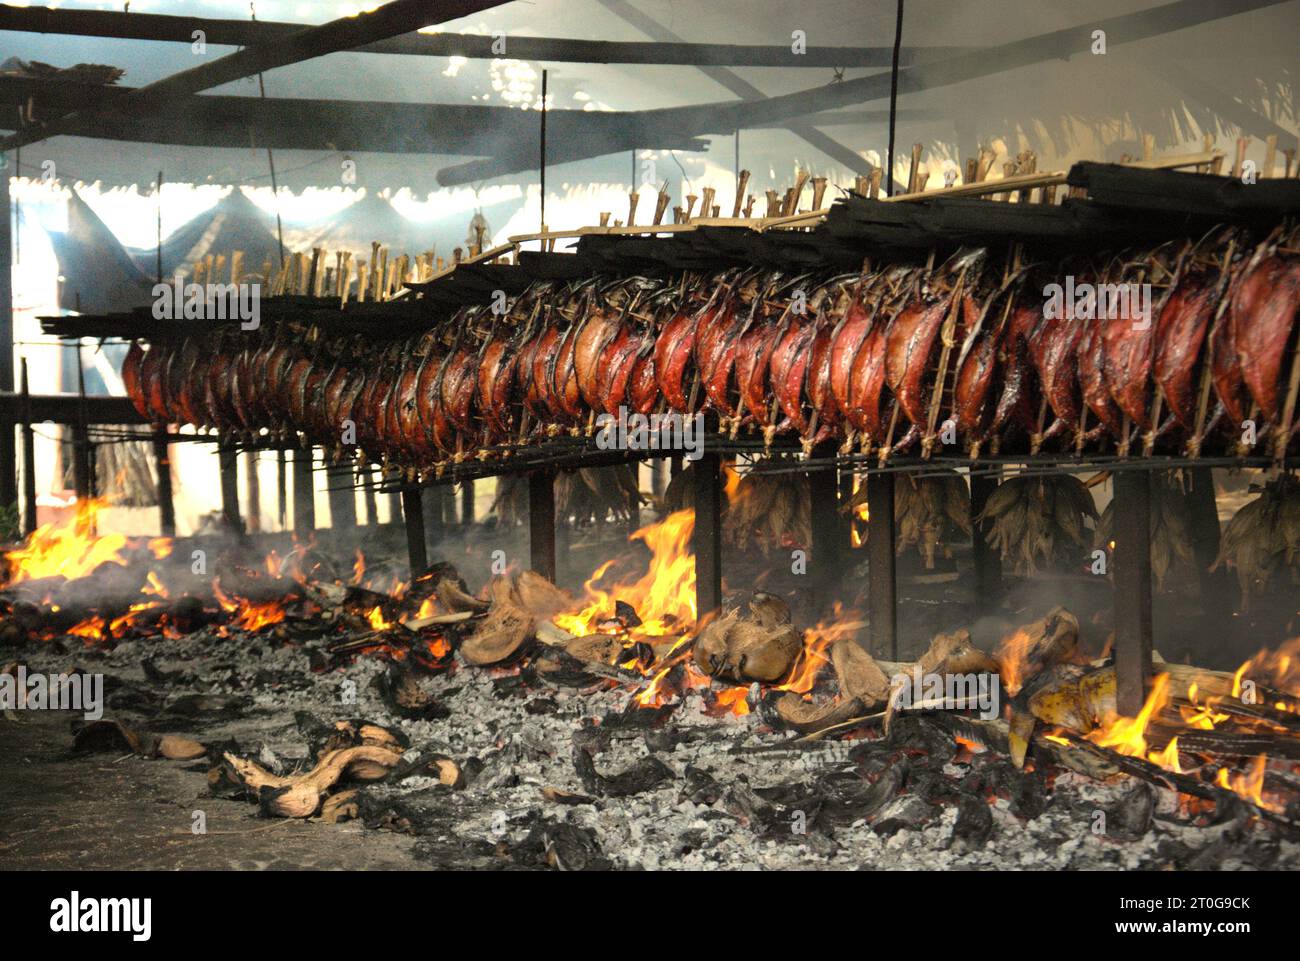 Eine geräucherte Fischproduktion, bei der Bonito-Thunfischfleisch in einer heimischen Industrie in Bitung, Nord-Sulawesi, Indonesien, verwendet wird. Der Beitrag der indigenen Bevölkerung zur technologischen Innovation bietet eine breite Palette von Optionen für die Bewältigung unter anderem der Ernährungssicherheit, so der Bericht des Zwischenstaatlichen Ausschusses für Klimaänderungen (IPCC) aus dem Jahr 2023. Der im Volksmund als Cakalang Fufu bekannte geräucherte Thunfisch gilt als exotisches einheimisches Essen, ein Teil der Produktion von Bonito-Thunfischen, die eine der wichtigsten wirtschaftlichen Aktivitäten in Bitung City ist, einem der äußeren Ringe Indonesiens... Stockfoto